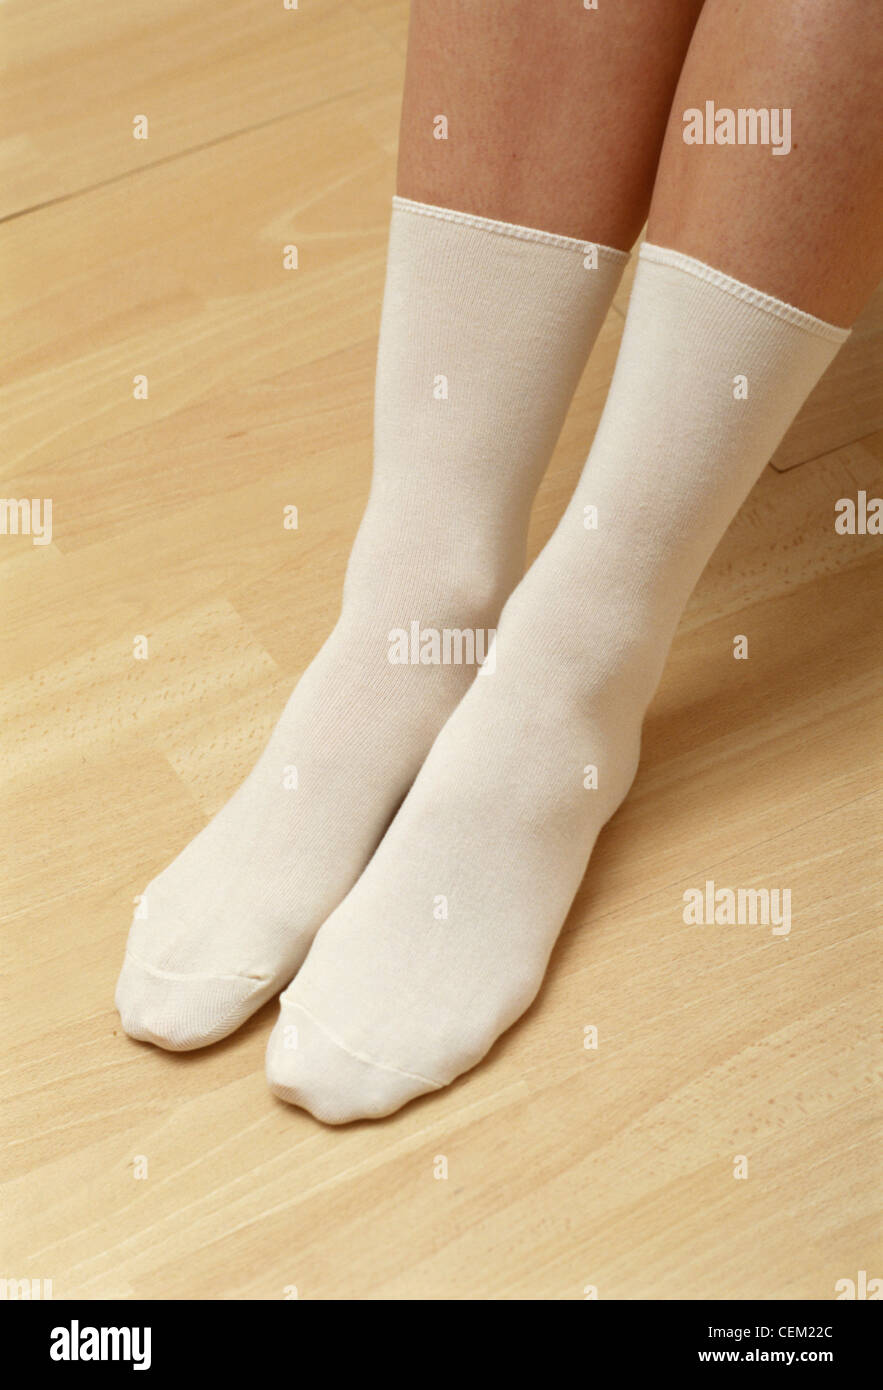 Detail image of female's feet wearing long white socks Stock Photo